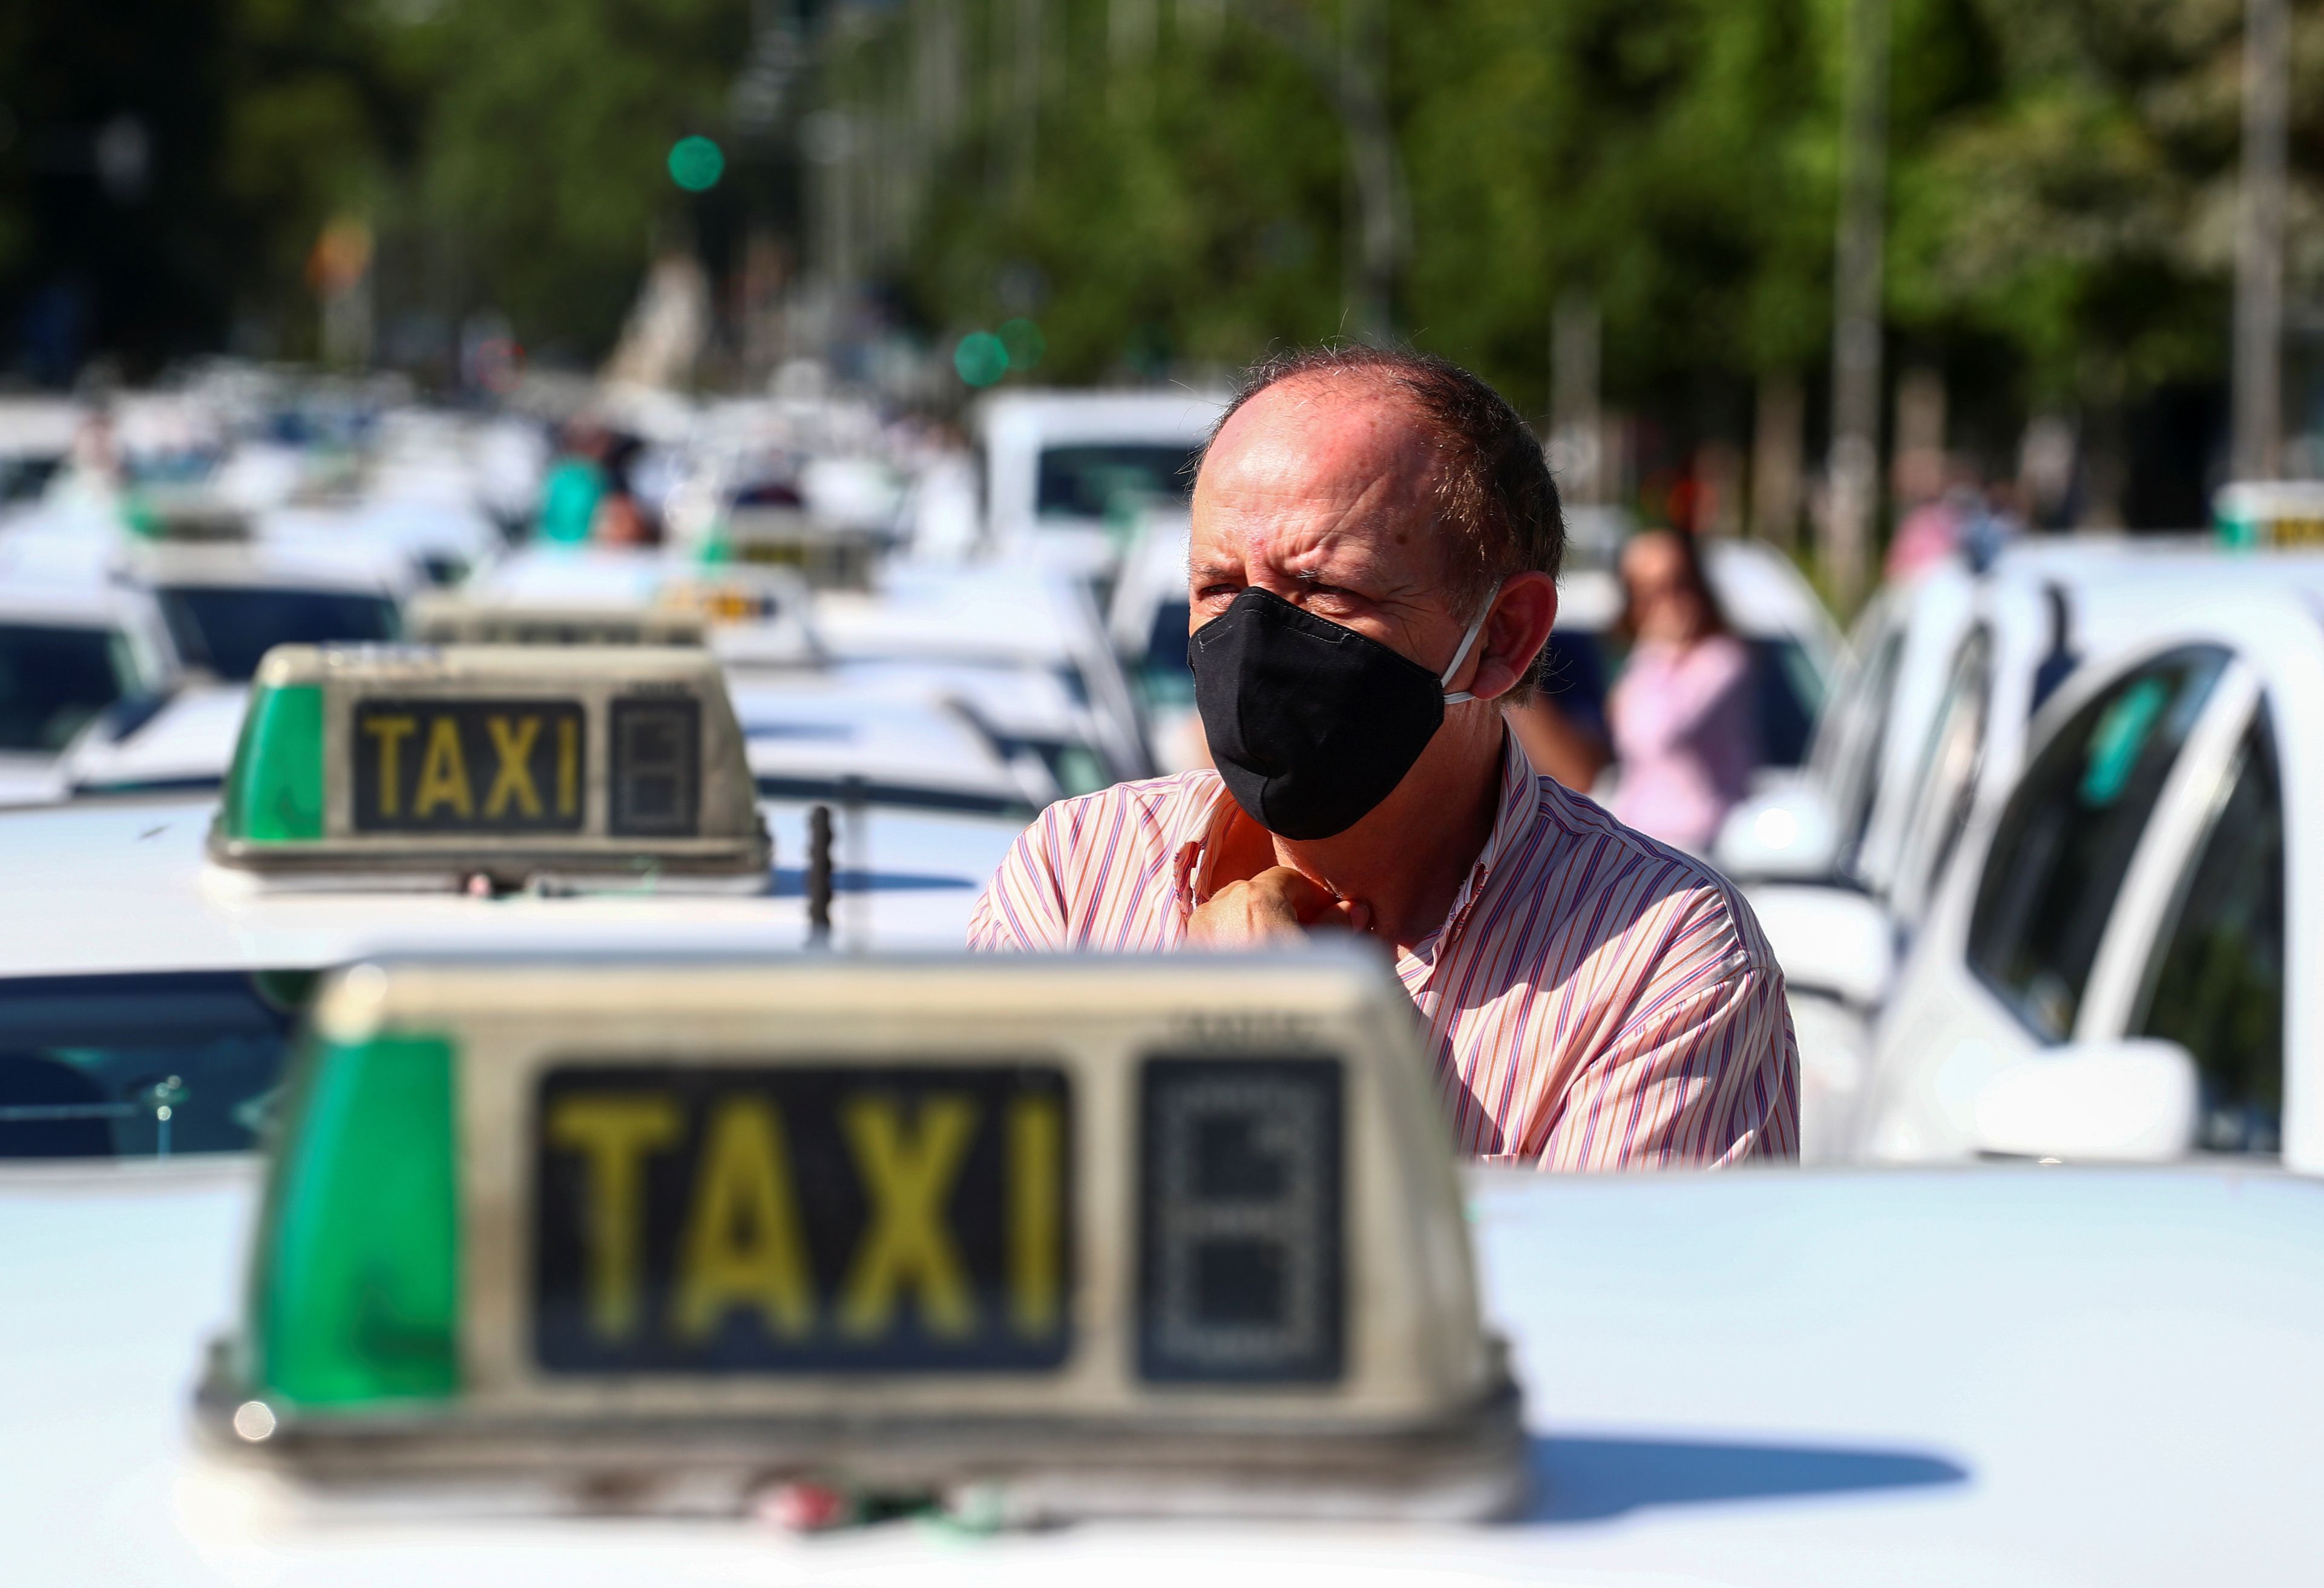 La huelga de taxistas en Madrid por la caída de demanda del coronavirus